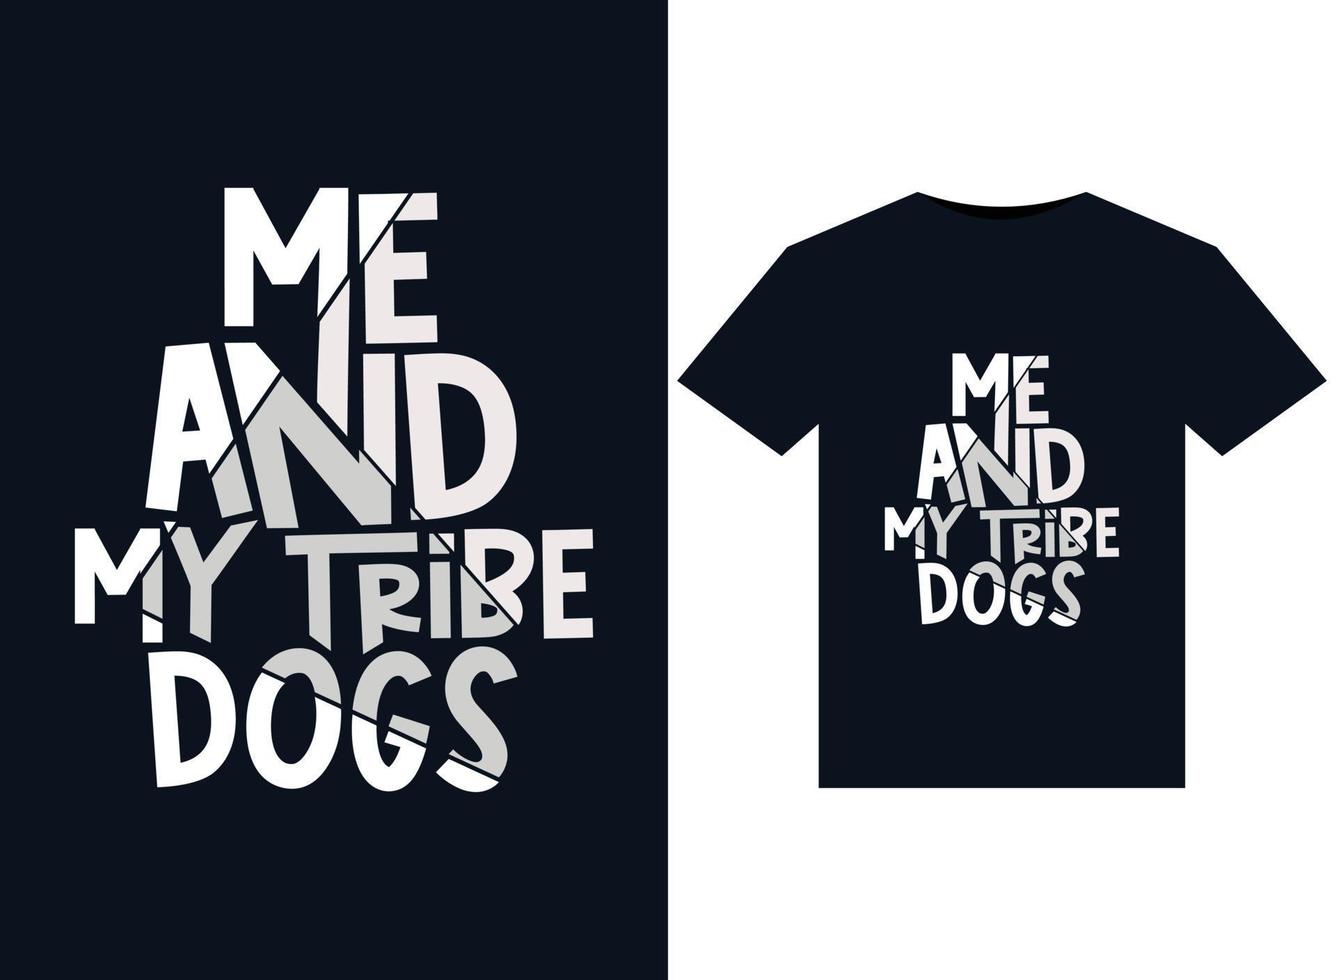 ich und mein stammeshundeillustrationen für druckfertige t-shirt-designs vektor